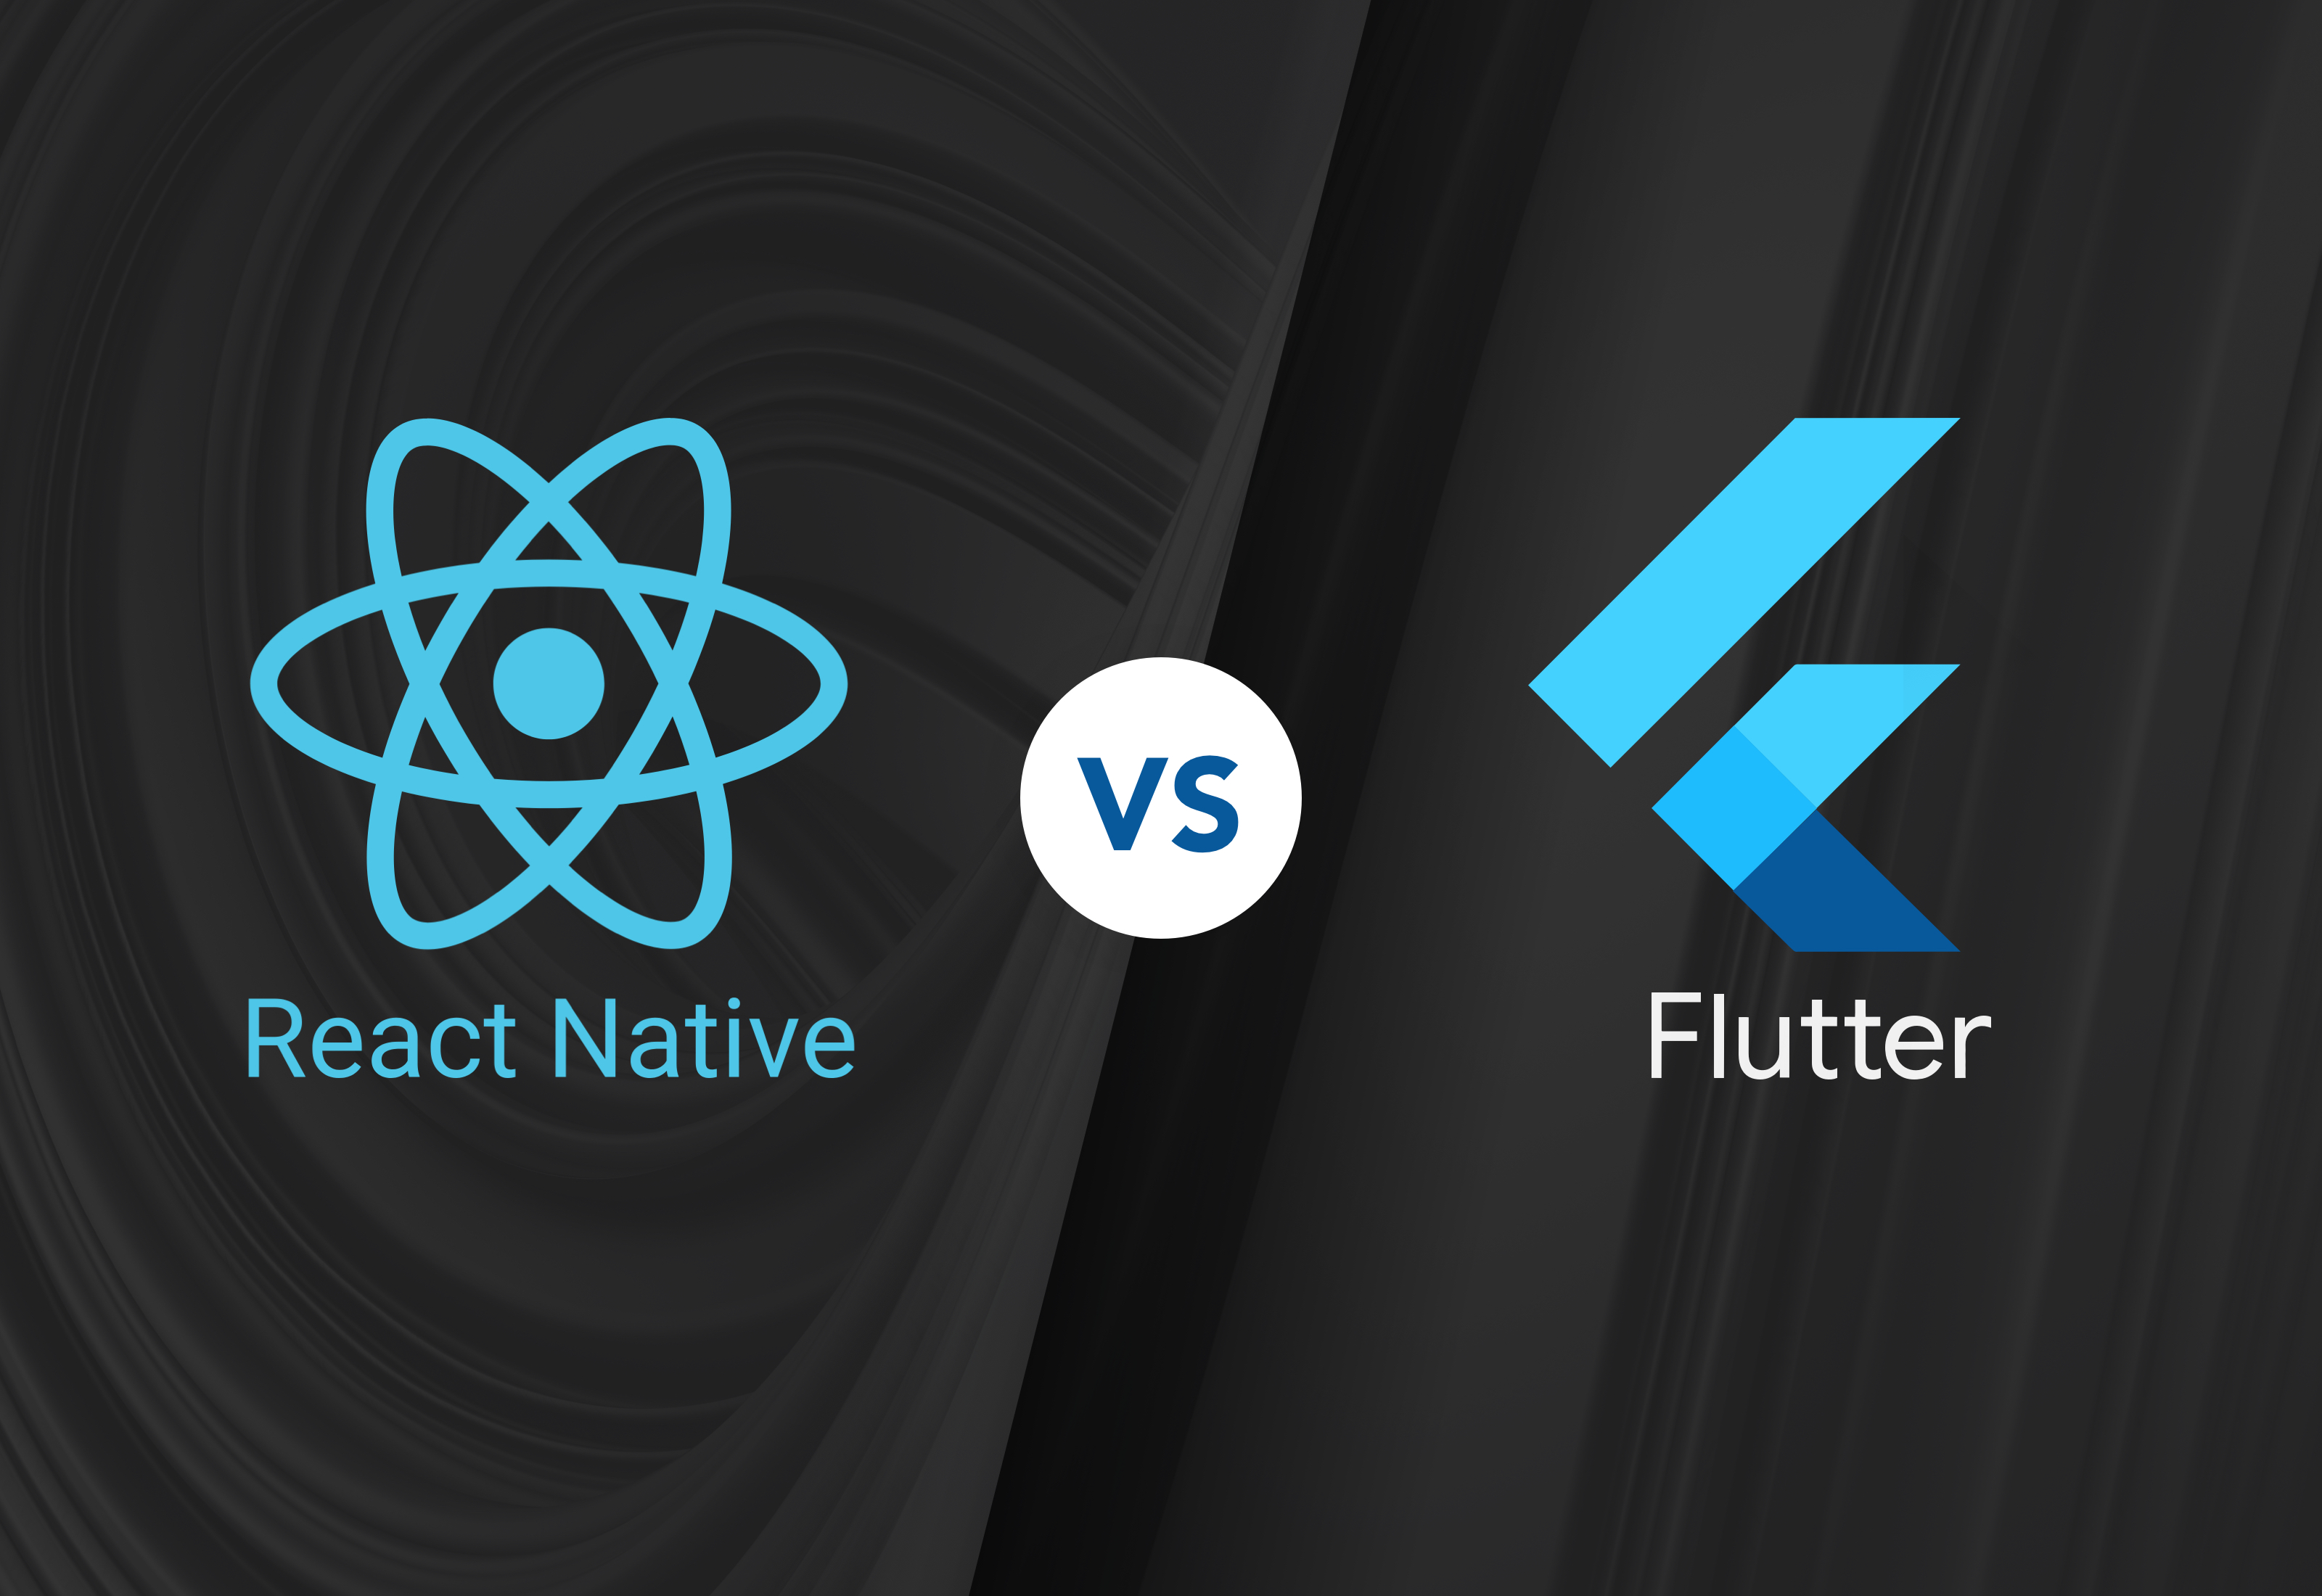 react native vs flutter